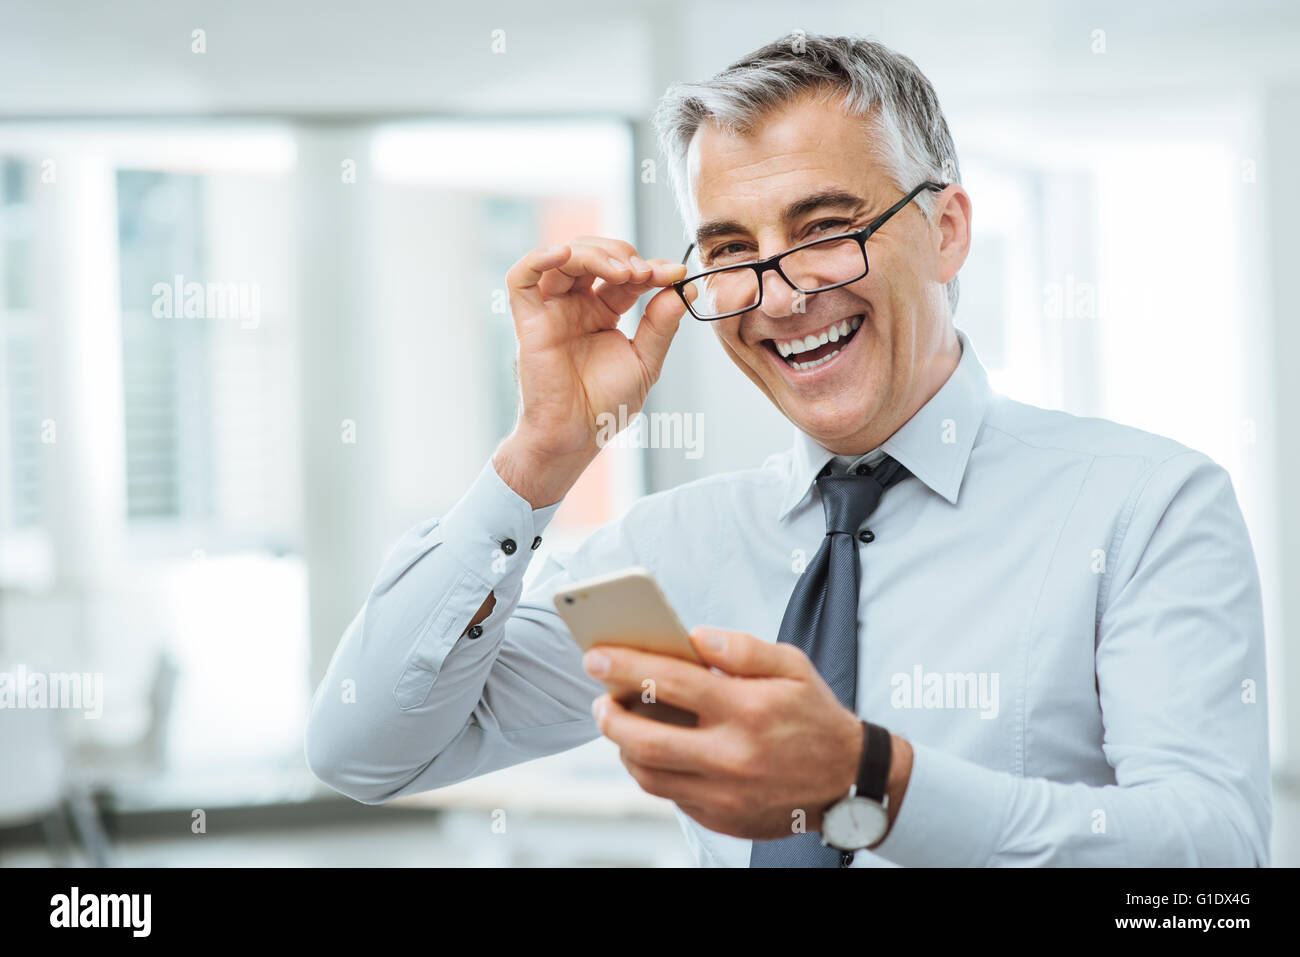 Smiling businessman with vision des problèmes, il s'ajuste ses lunettes et lire quelque chose sur son téléphone mobile Banque D'Images